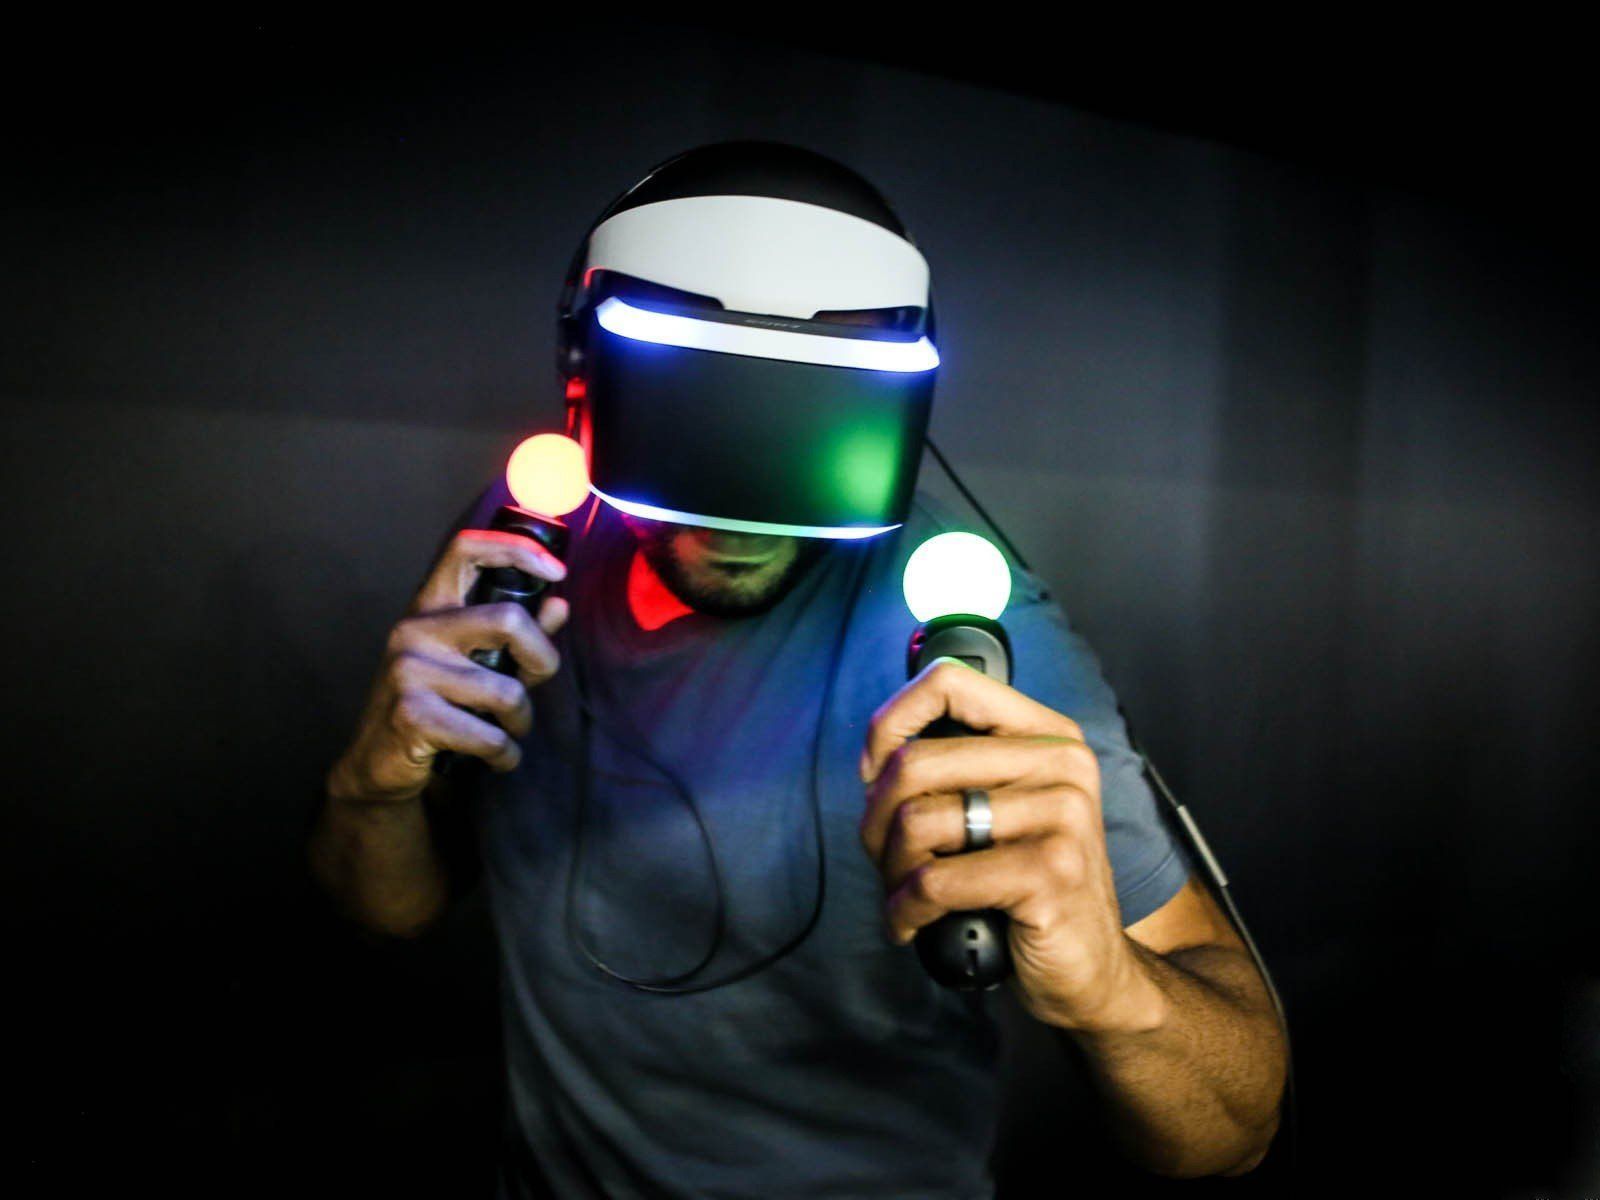 Le Playstation VR coutera 2 fois moins cher que l'Oculus Rift #3